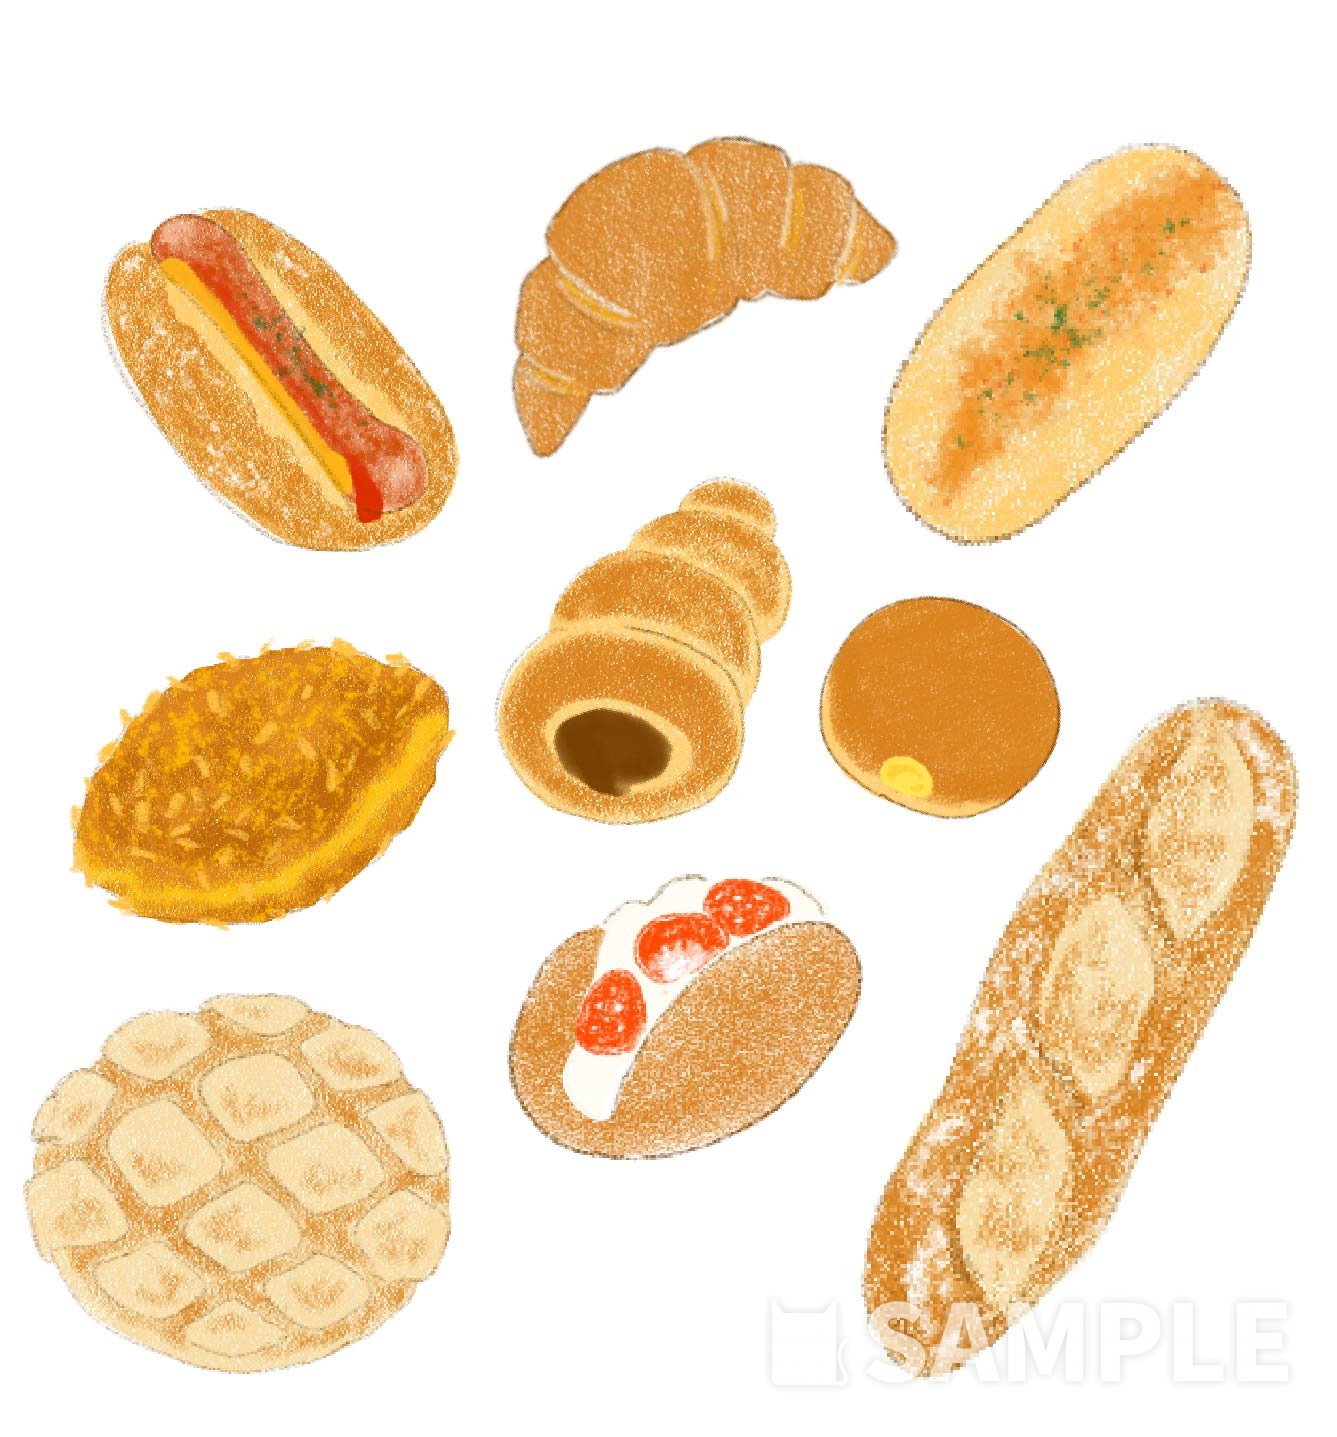 おいしそうなパン 食べ物のイラスト描きます イラスト制作依頼は